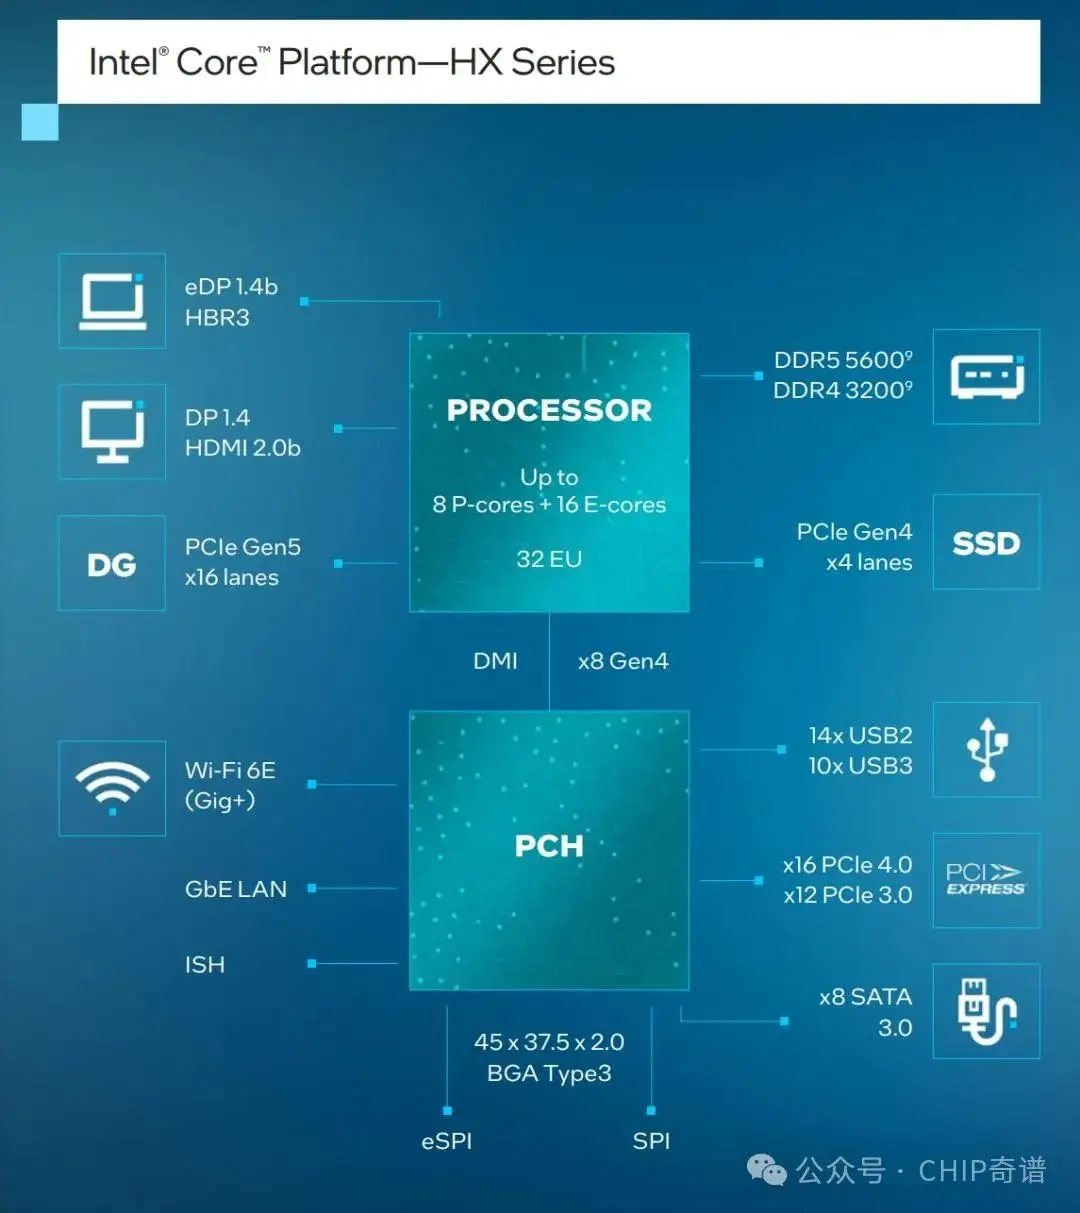 深度剖析NVIDIA GT920M显卡性能及多功能应用场景：轻度游戏、娱乐和办公首选配置详解  第10张